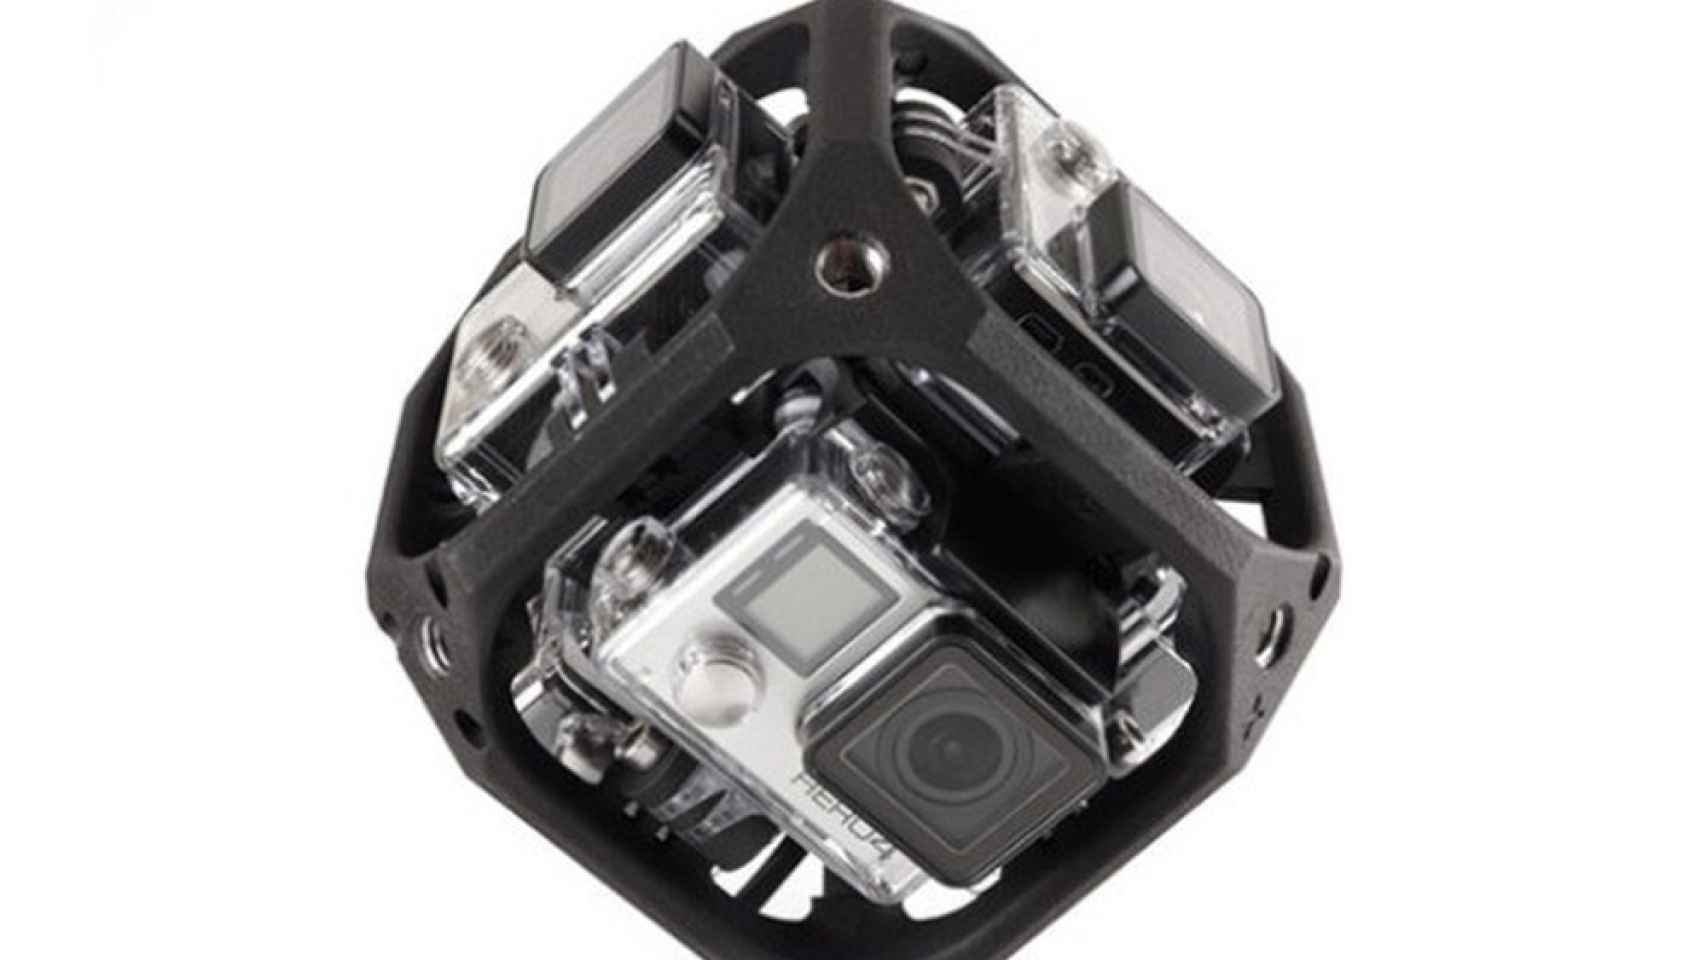 Graba vídeos para realidad virtual con esta cámara esférica de GoPro